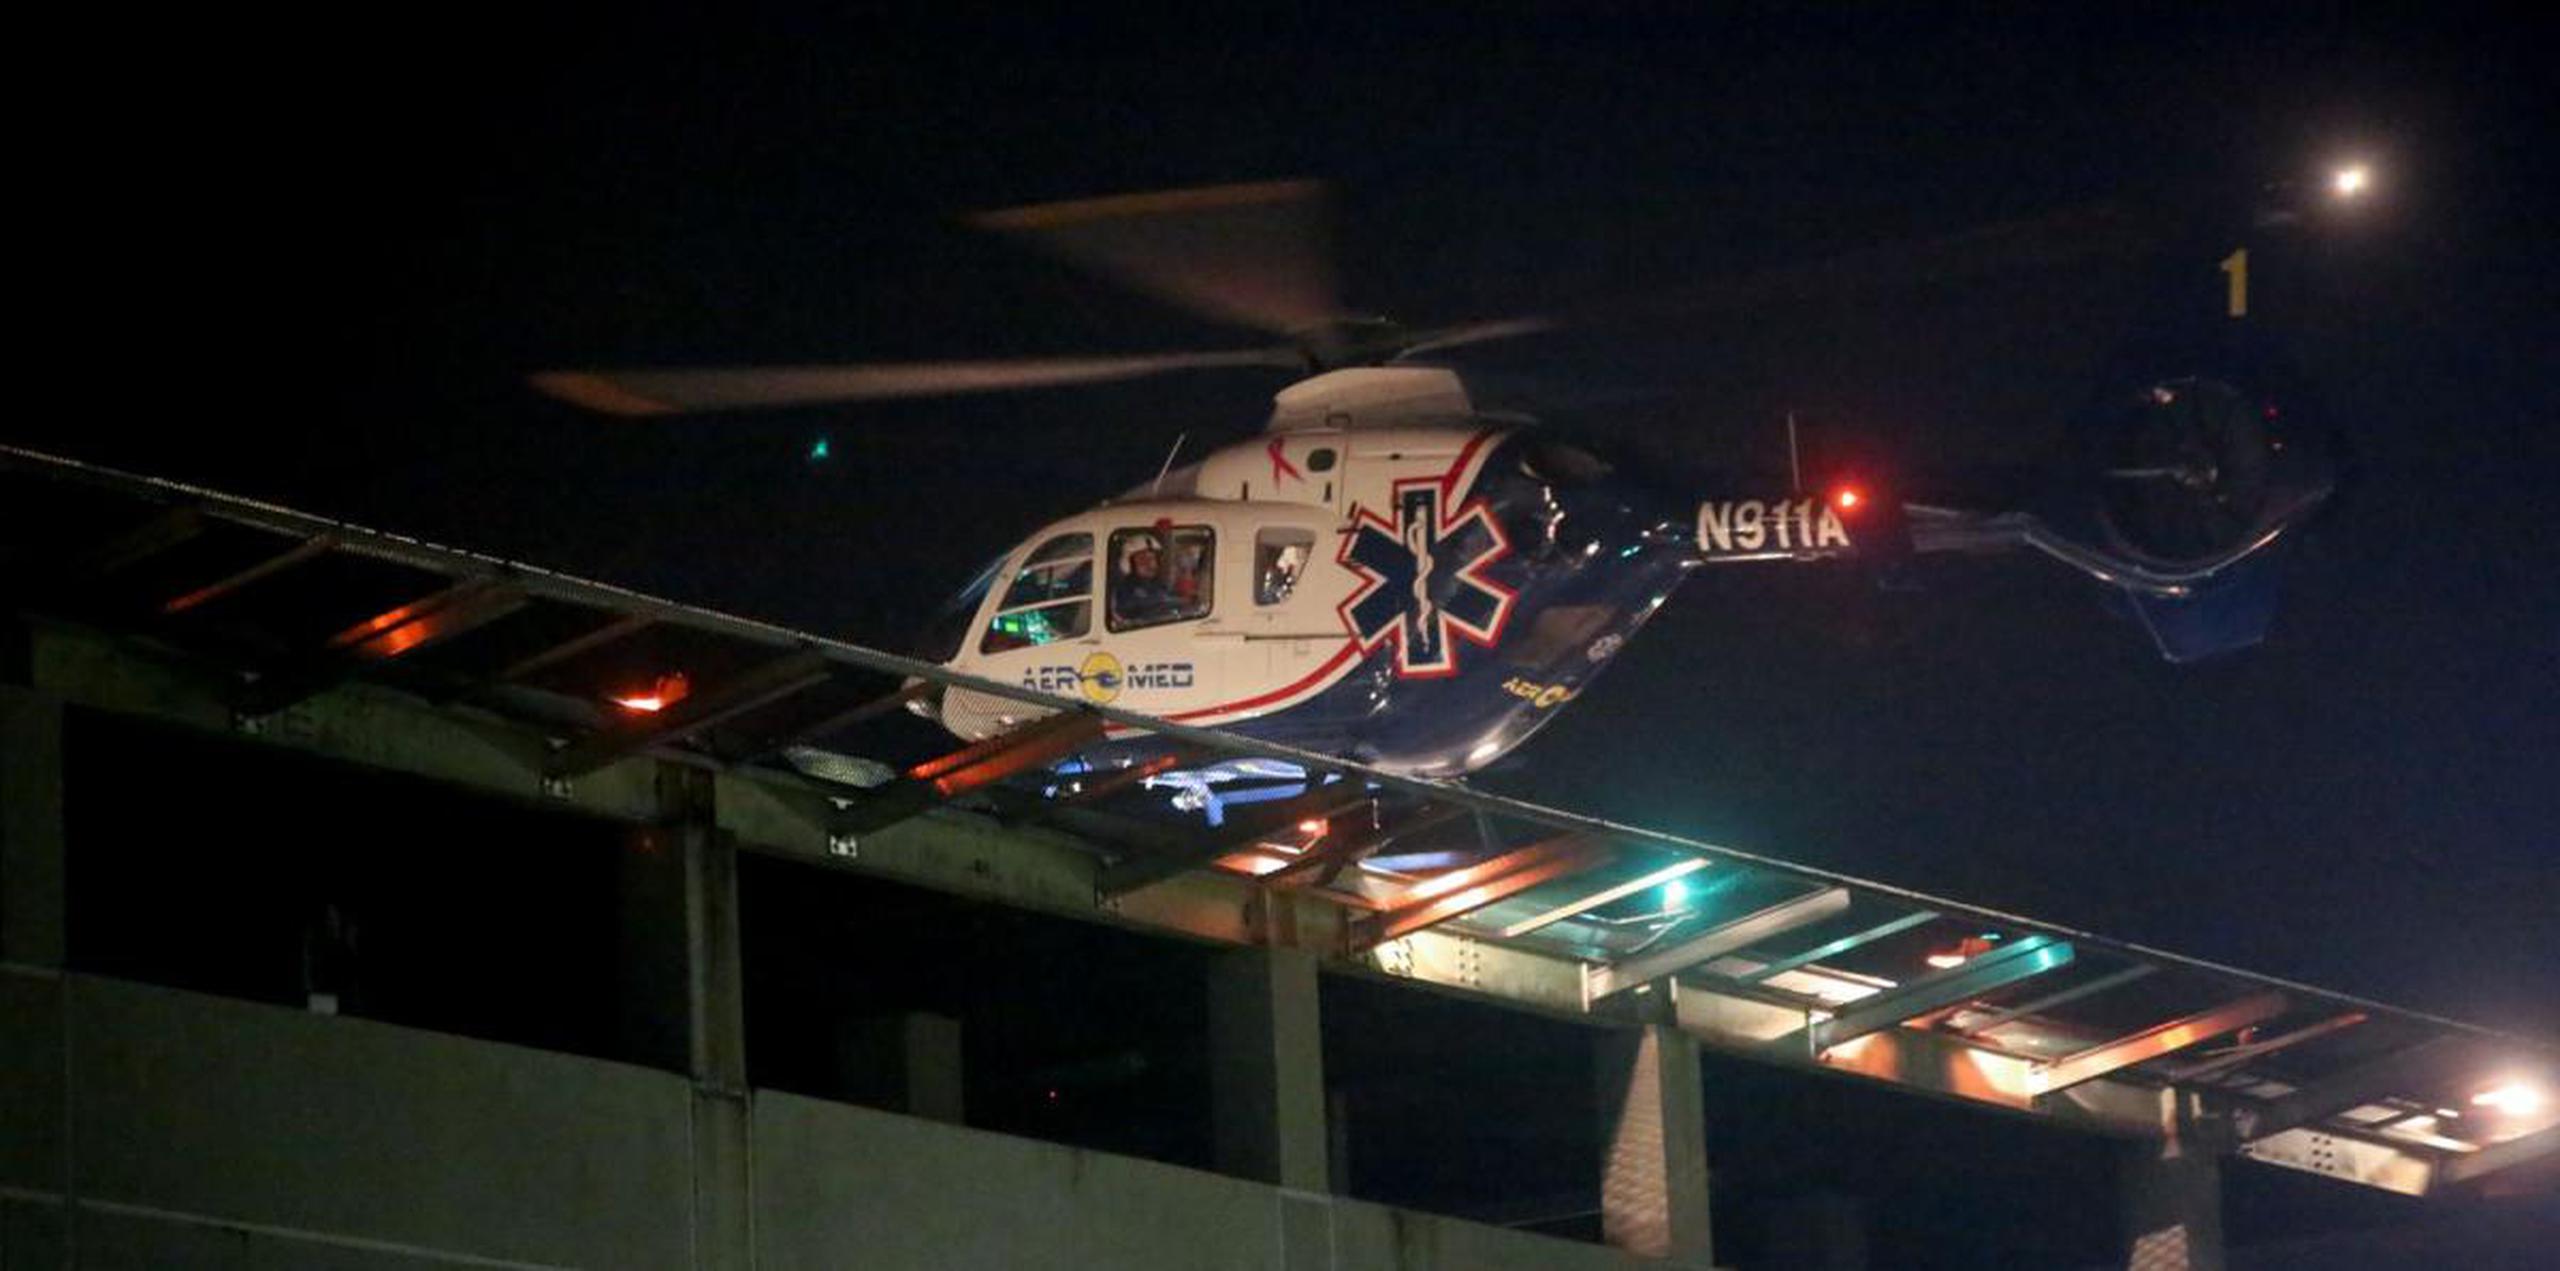 La fémina, que no ha sido identificada, fue trasladada en ambulancia aérea en estado delicado al Centro Médico de Río Piedras. (Archivo)

